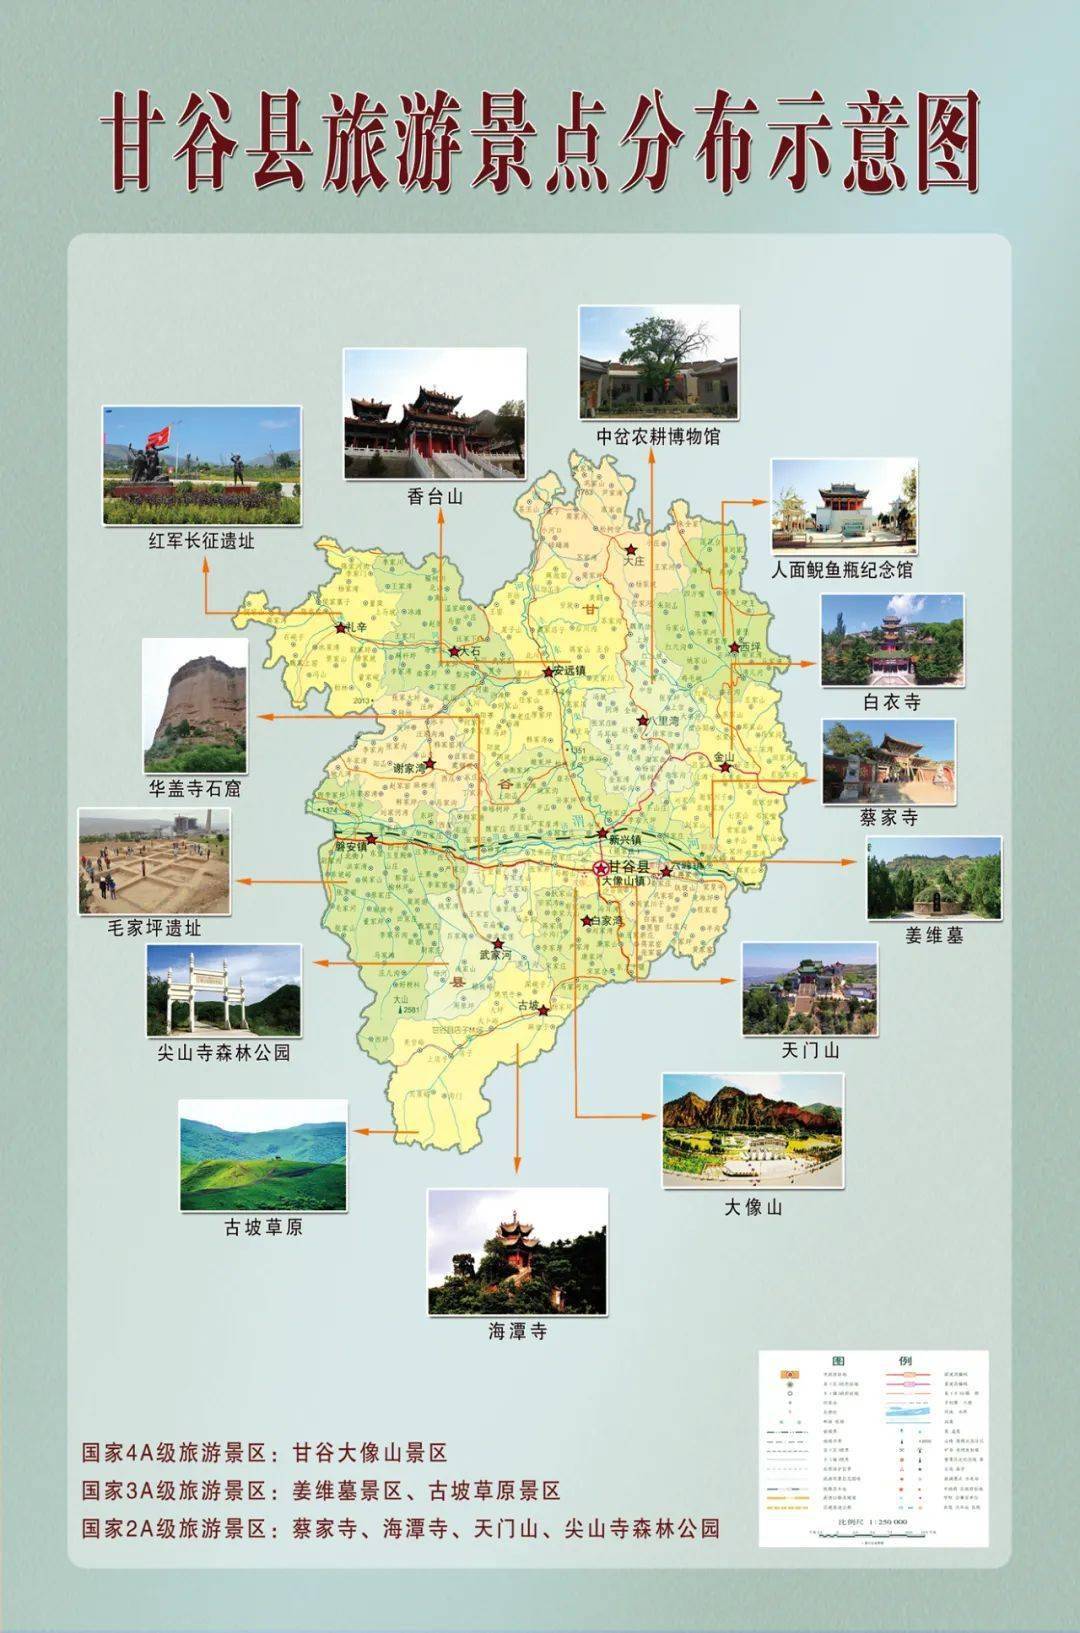 小编用高德地图为你动态展示了甘谷县38个旅游景点保存图片用高德地图